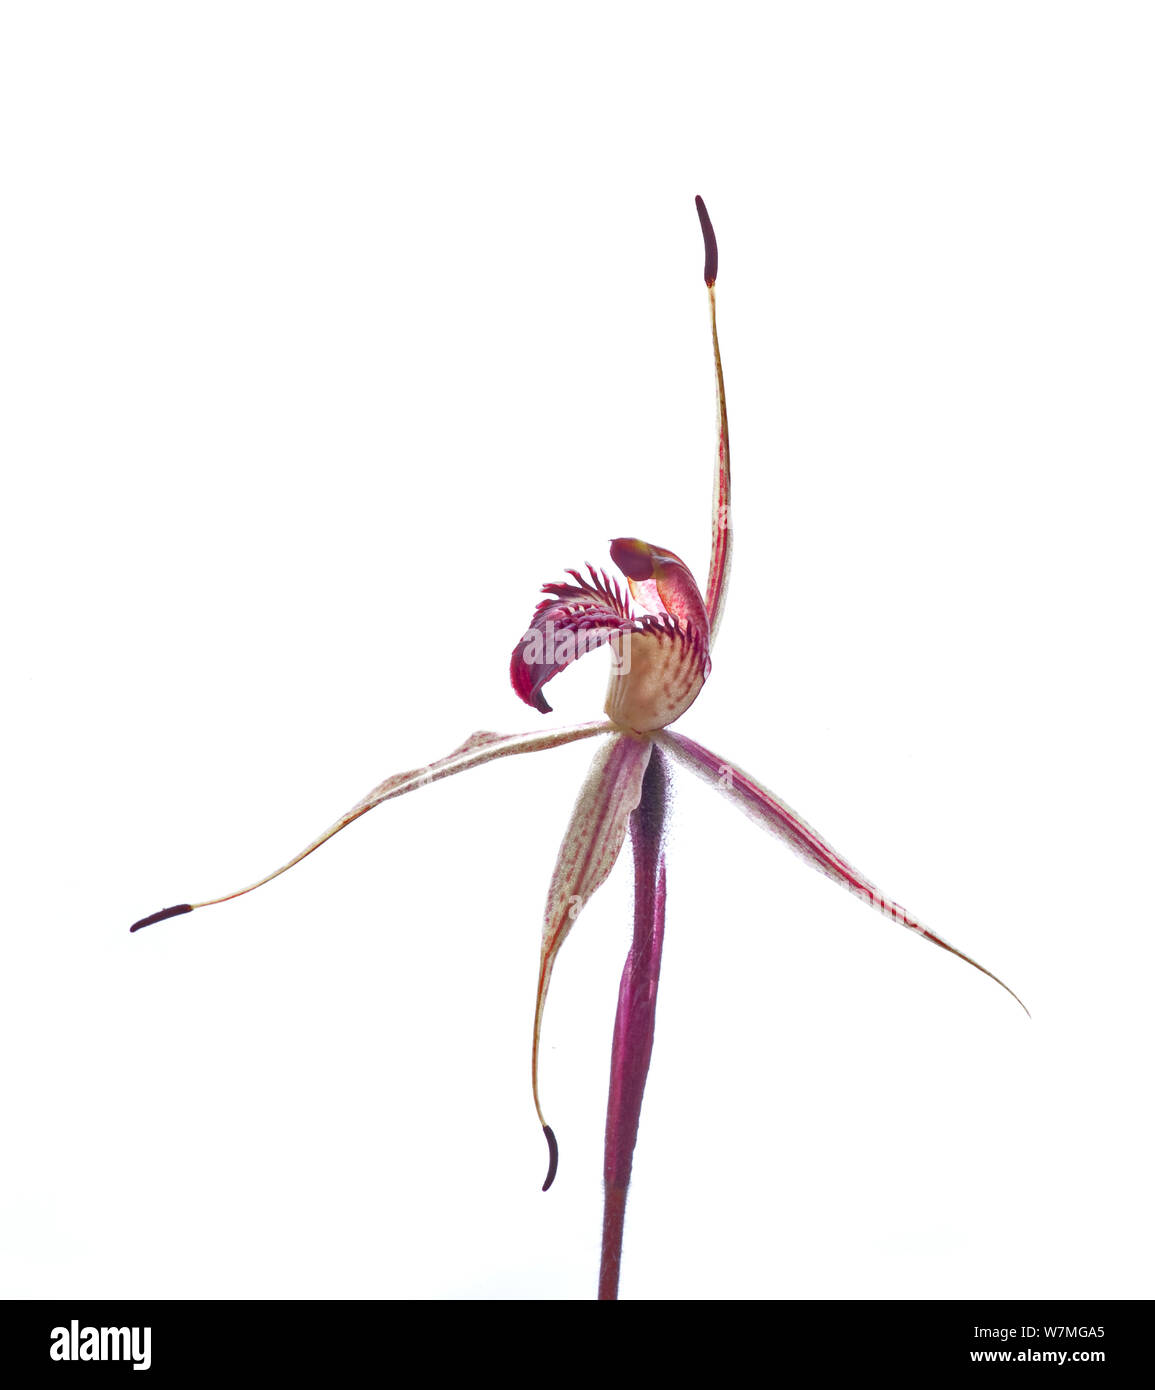 Mccann orchidée araignée (Caladenia sp aff. reticulata)trois valets, Wimmera, Victoria, Australie, septembre. meetyourneighbors.net project Banque D'Images